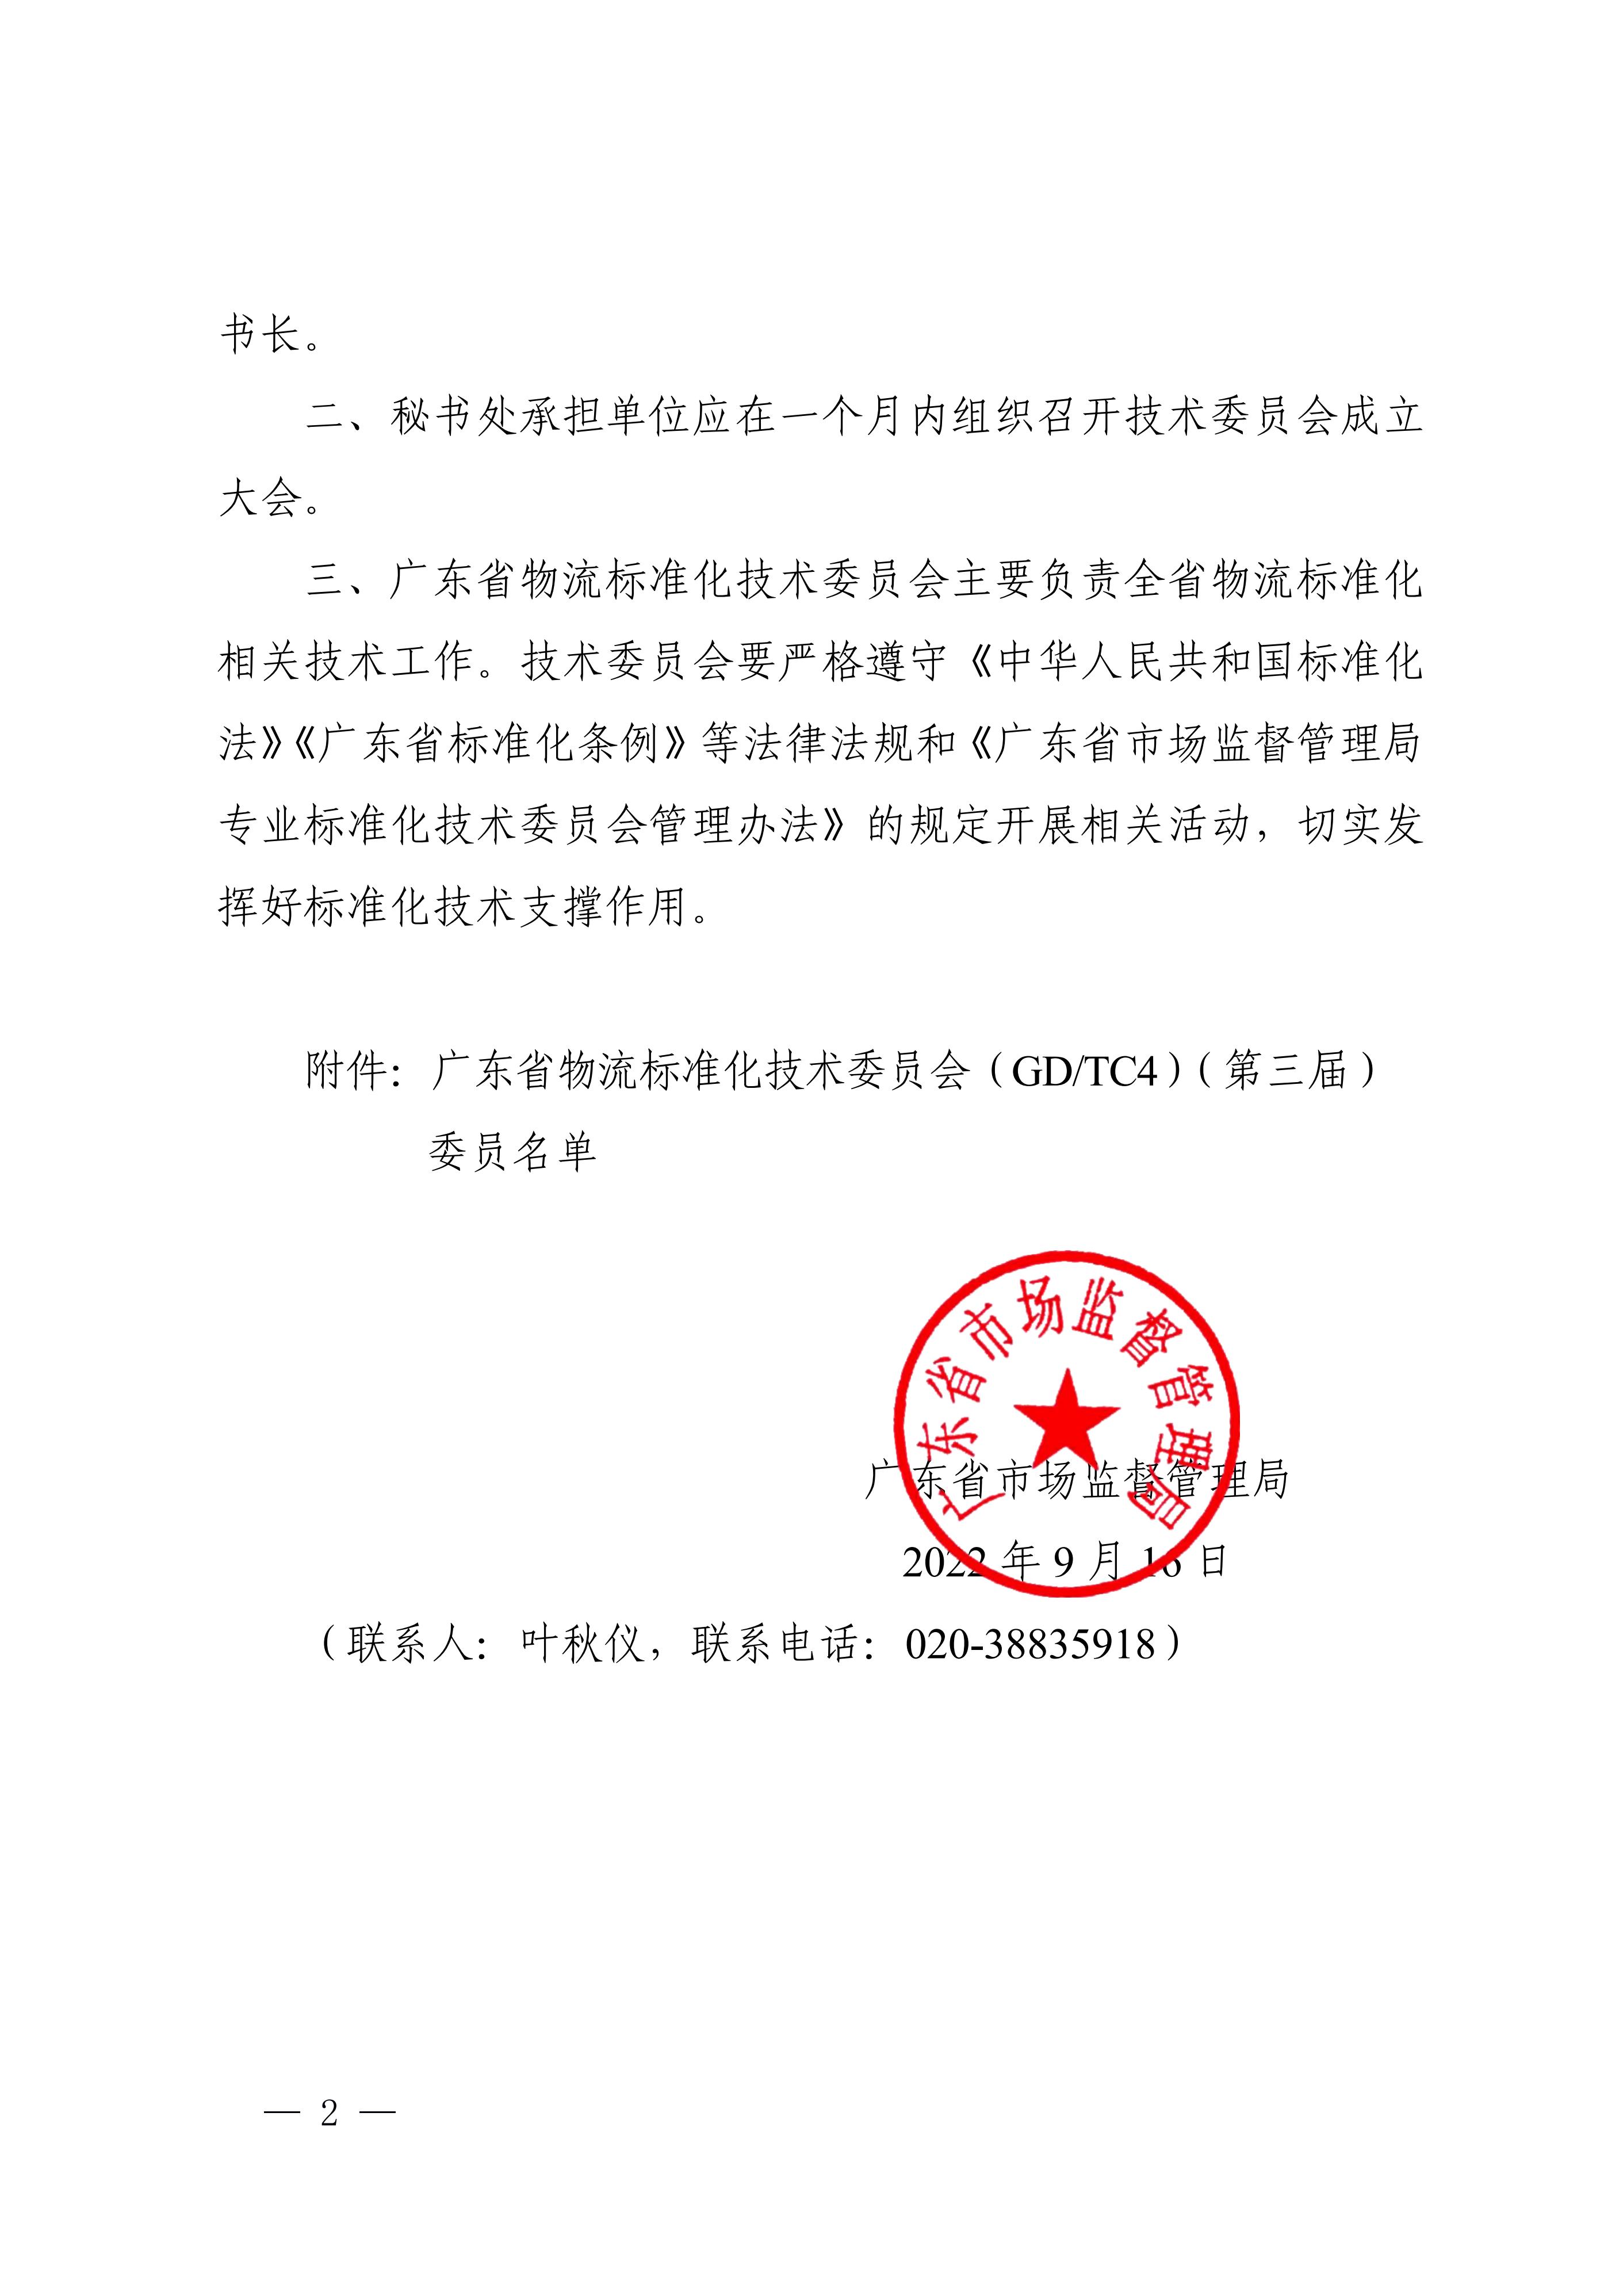 正-广东省市场监督管理局关于成立广东省物流标准化技术委员会（第三届）的通告_01.jpg